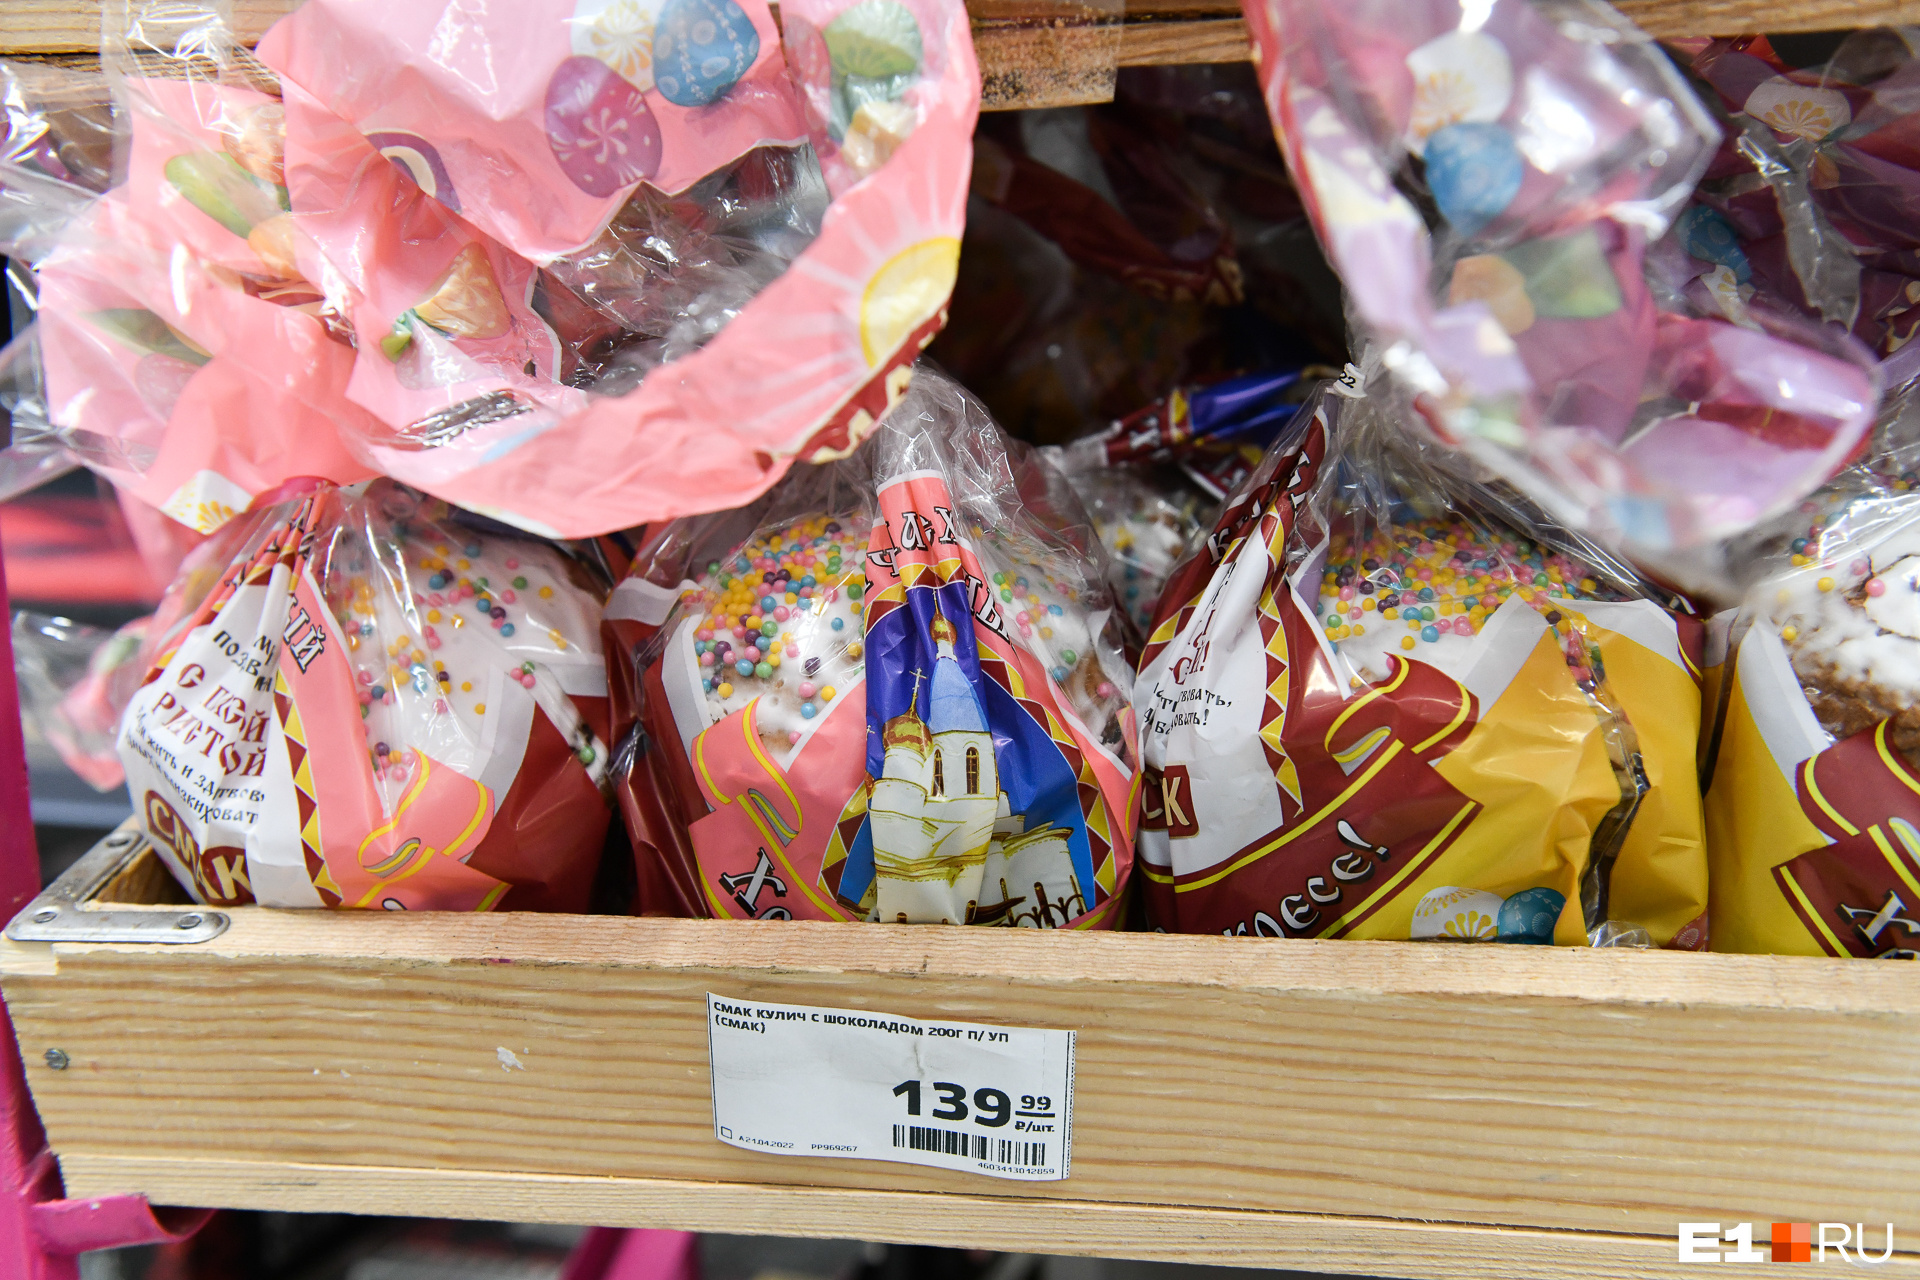 Кулич с шоколадом от СМАКа стоит 140 рублей (за 200 граммов)